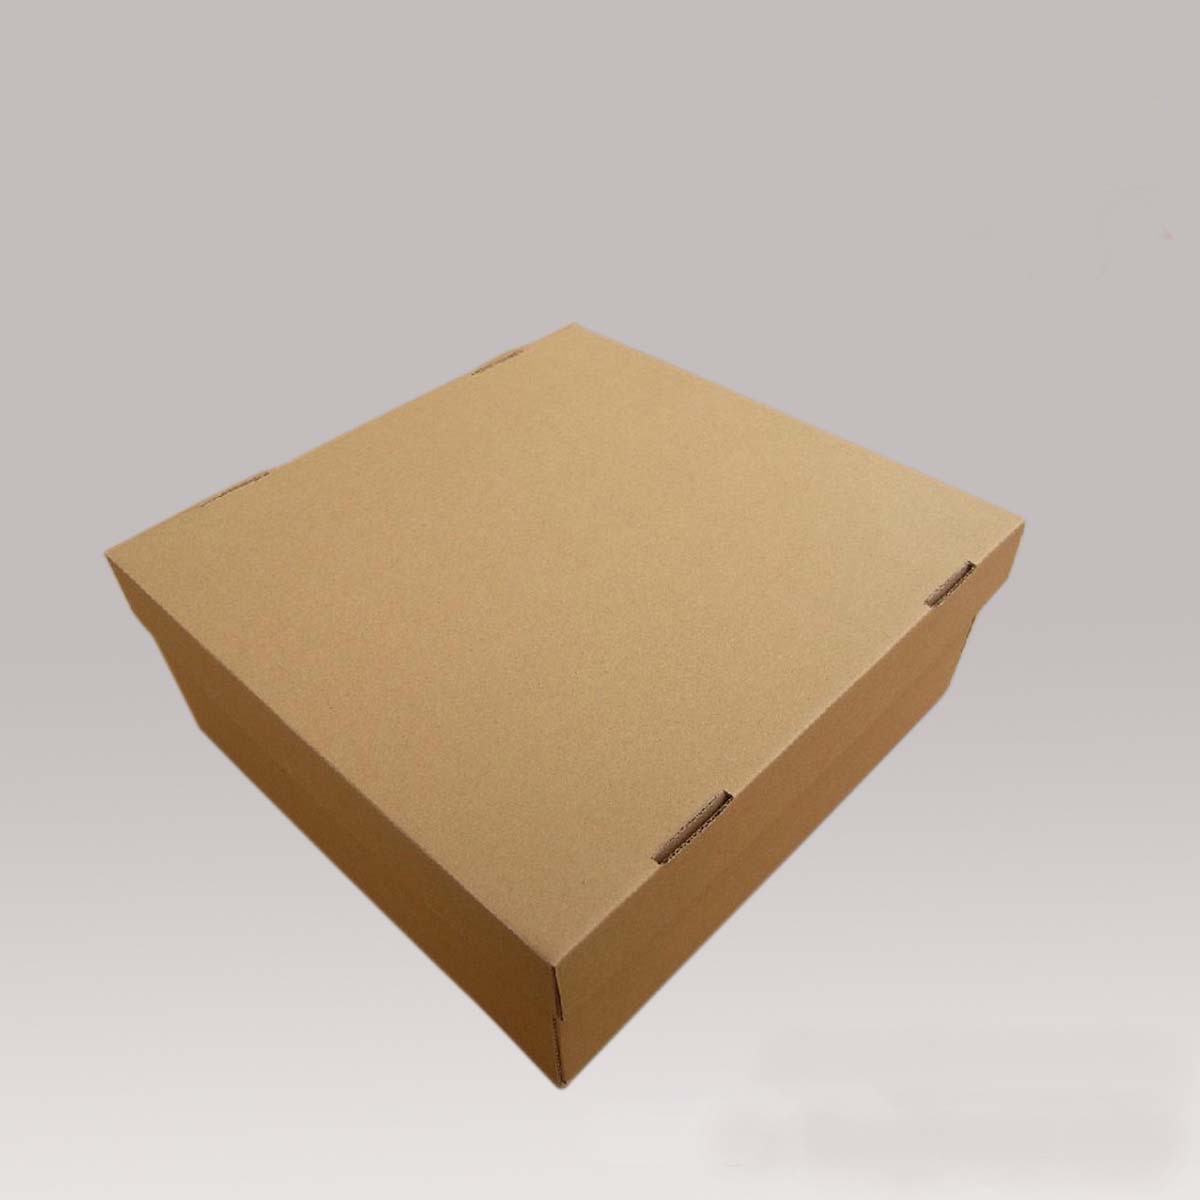 2014年海南 印刷 包装 行业前景_企业包装盒印刷_化妆品盒印刷